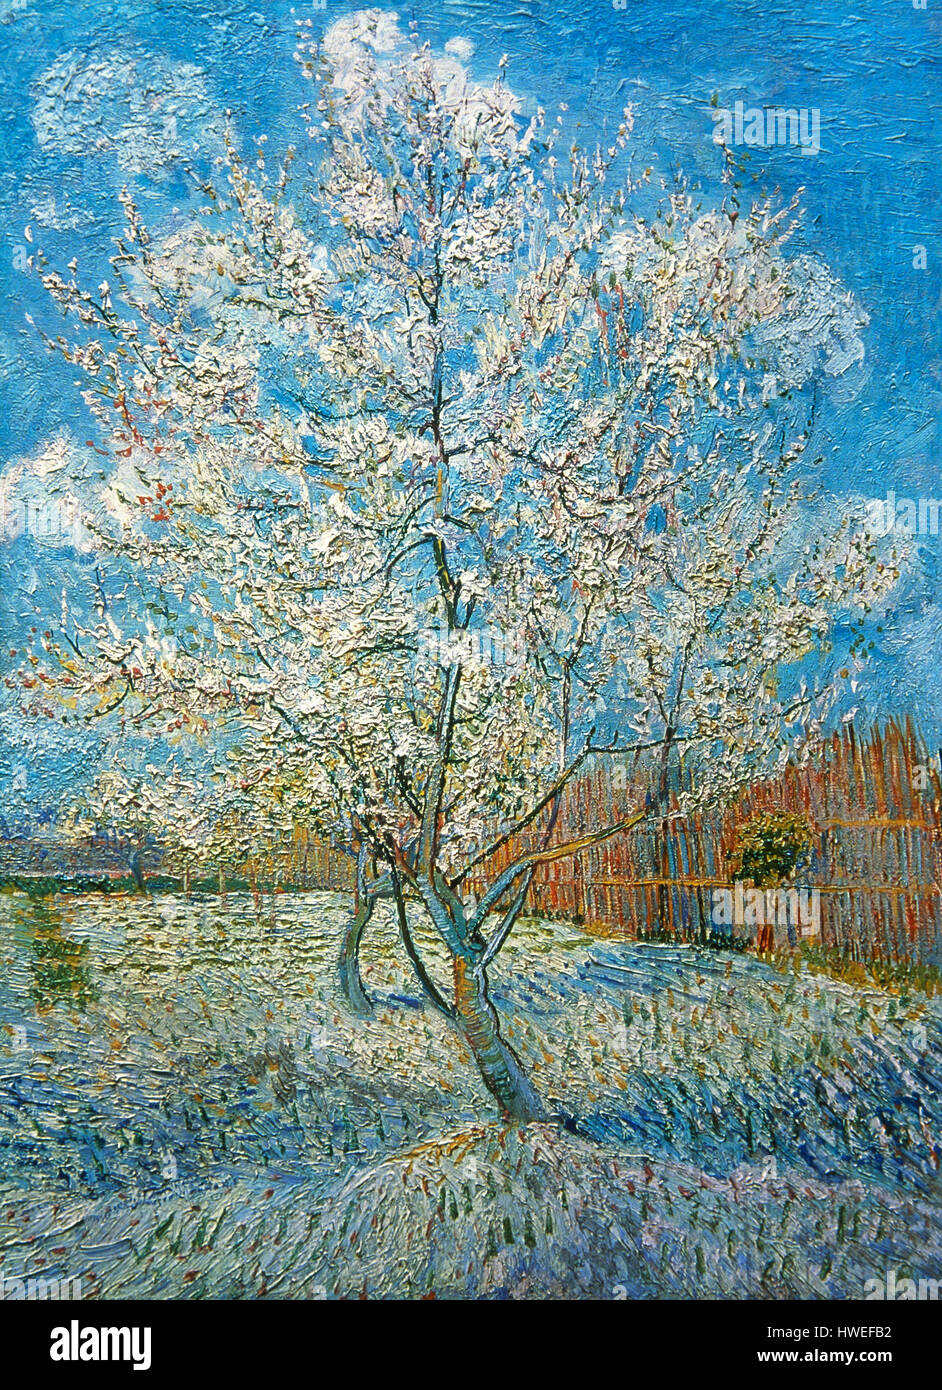 Vincent Van Gogh (1853-1890). Niederländische Post-Impressionisten Maler. Pfirsichbaum, 1888. Vincent Van Gogh Museum. Amsterdam. Holland. Stockfoto